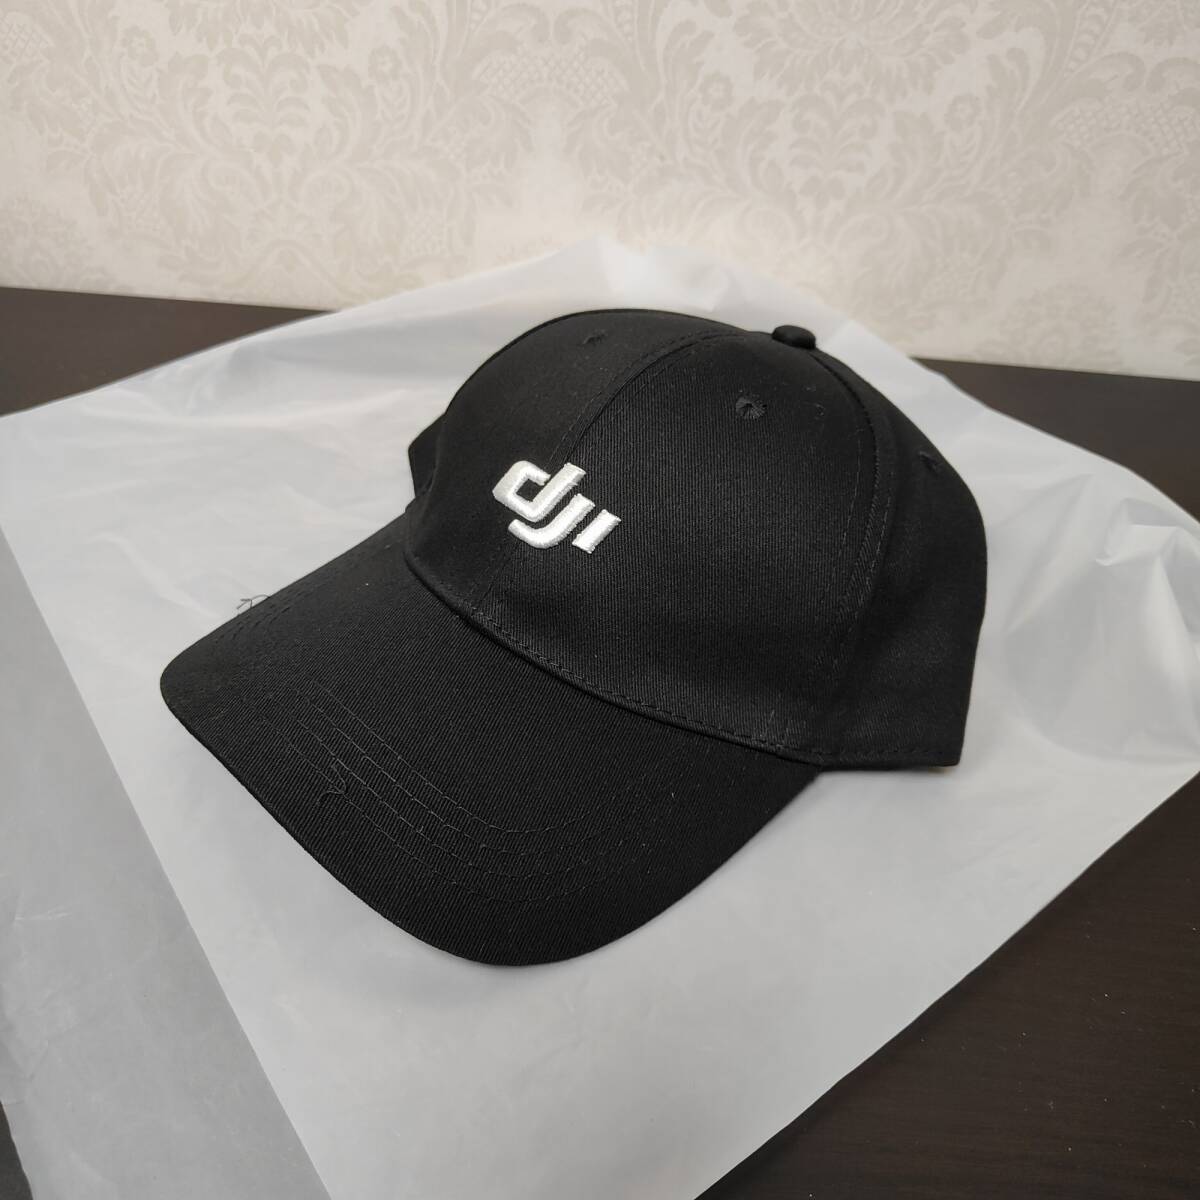 [ бесплатная доставка ]DJI не продается колпак шляпа чёрный дрон | камера . знаменитый . производитель 